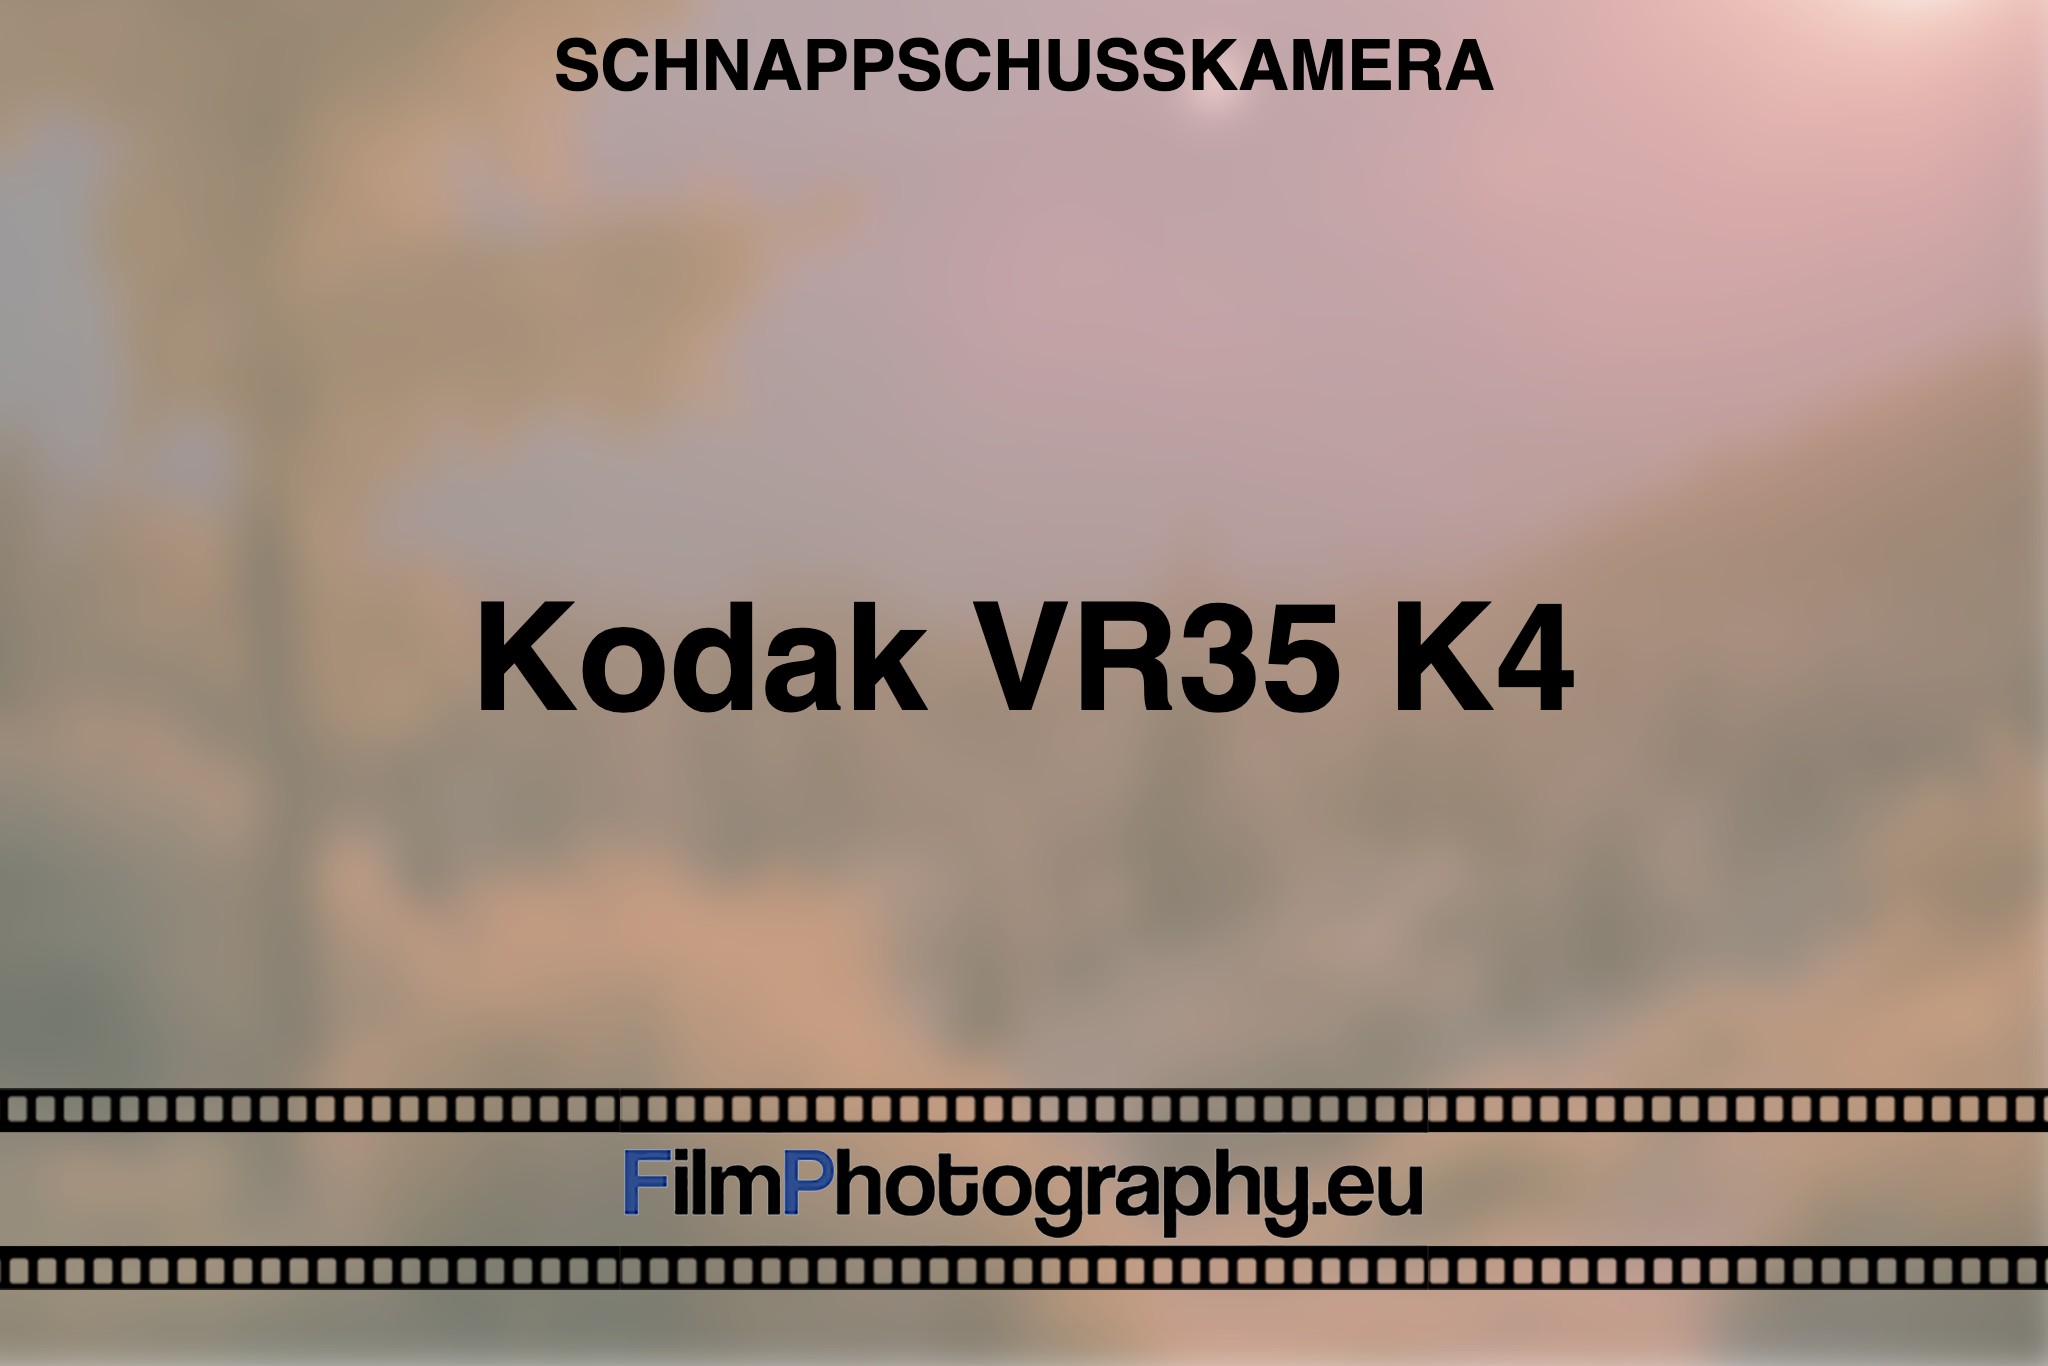 kodak-vr35-k4-schnappschusskamera-bnv